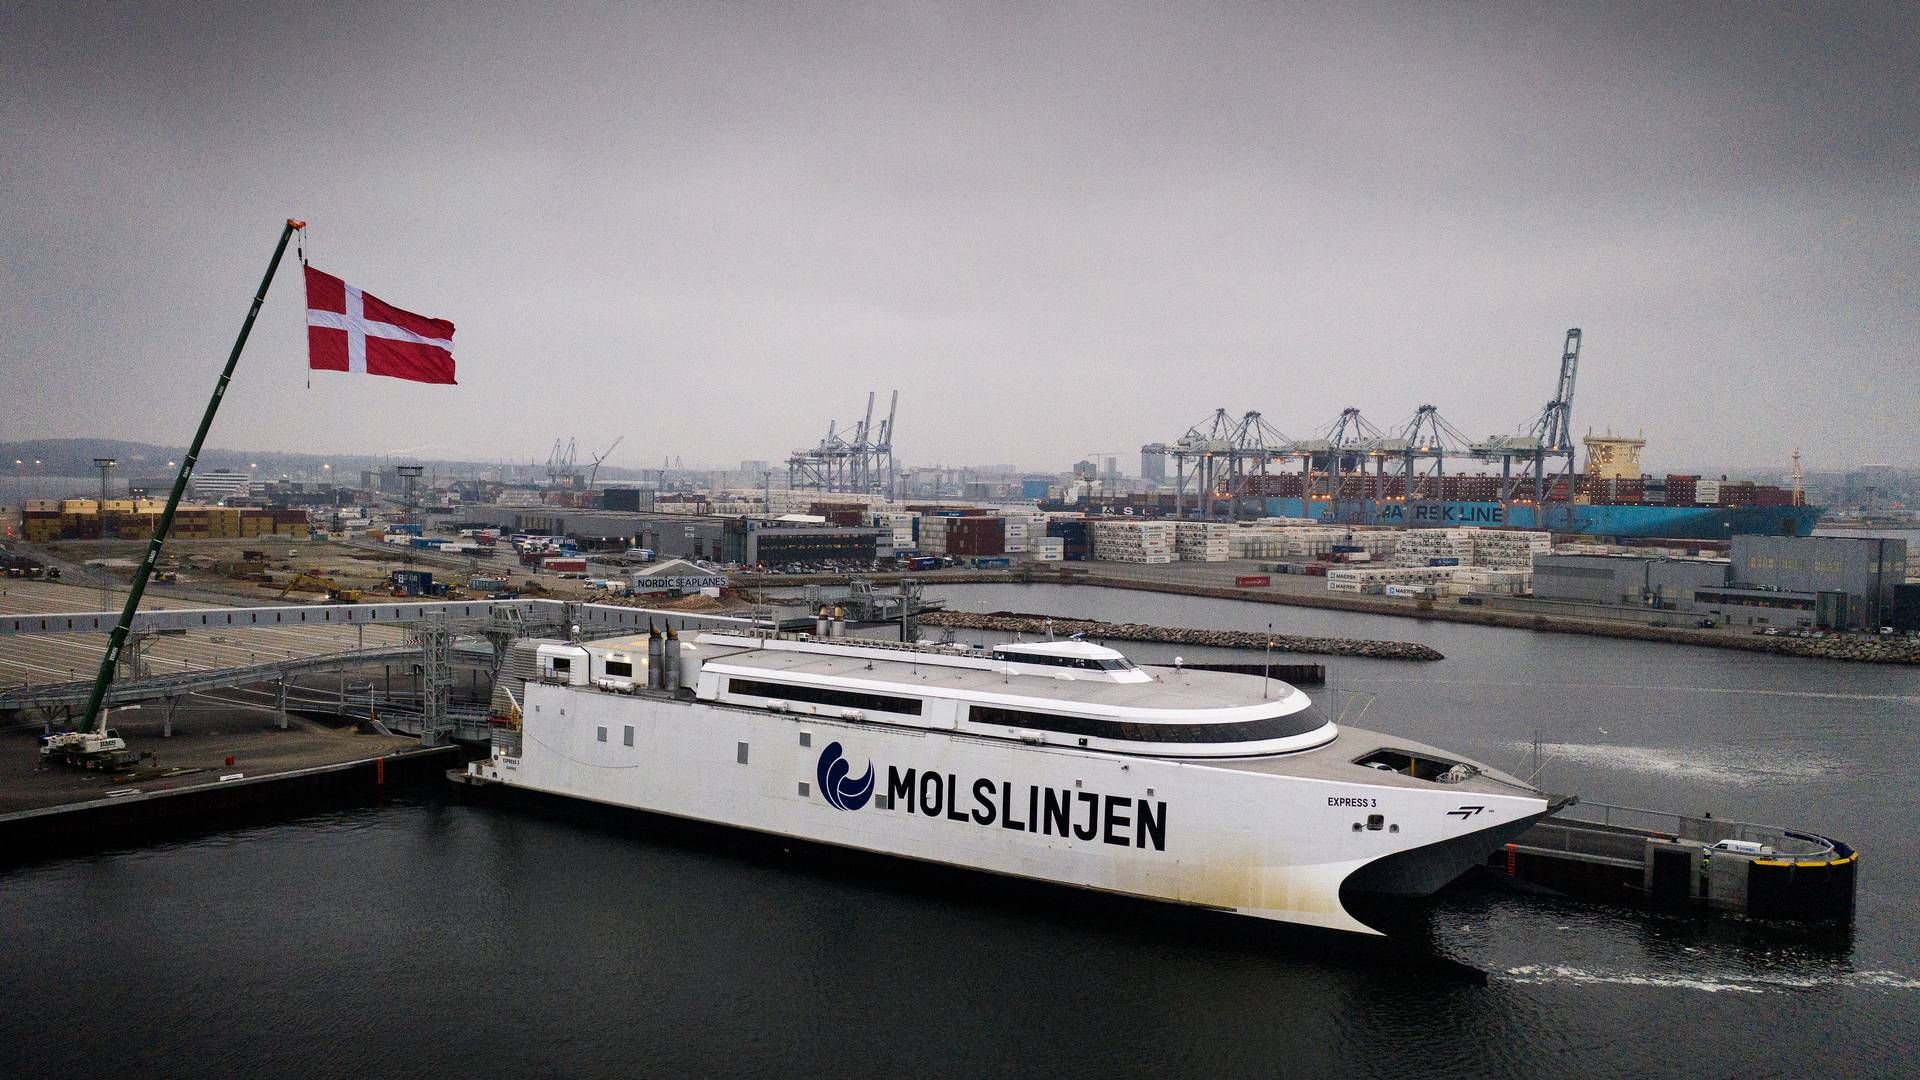 Molslinjens hurtigfærger kommer med en betydelig CO2-udledning. Fra næste år bliver den afgiftsbelagt, derfor har rederiet travlt med den grønne omstilling. | Foto: Casper Dalhoff/Ritzau Scanpix